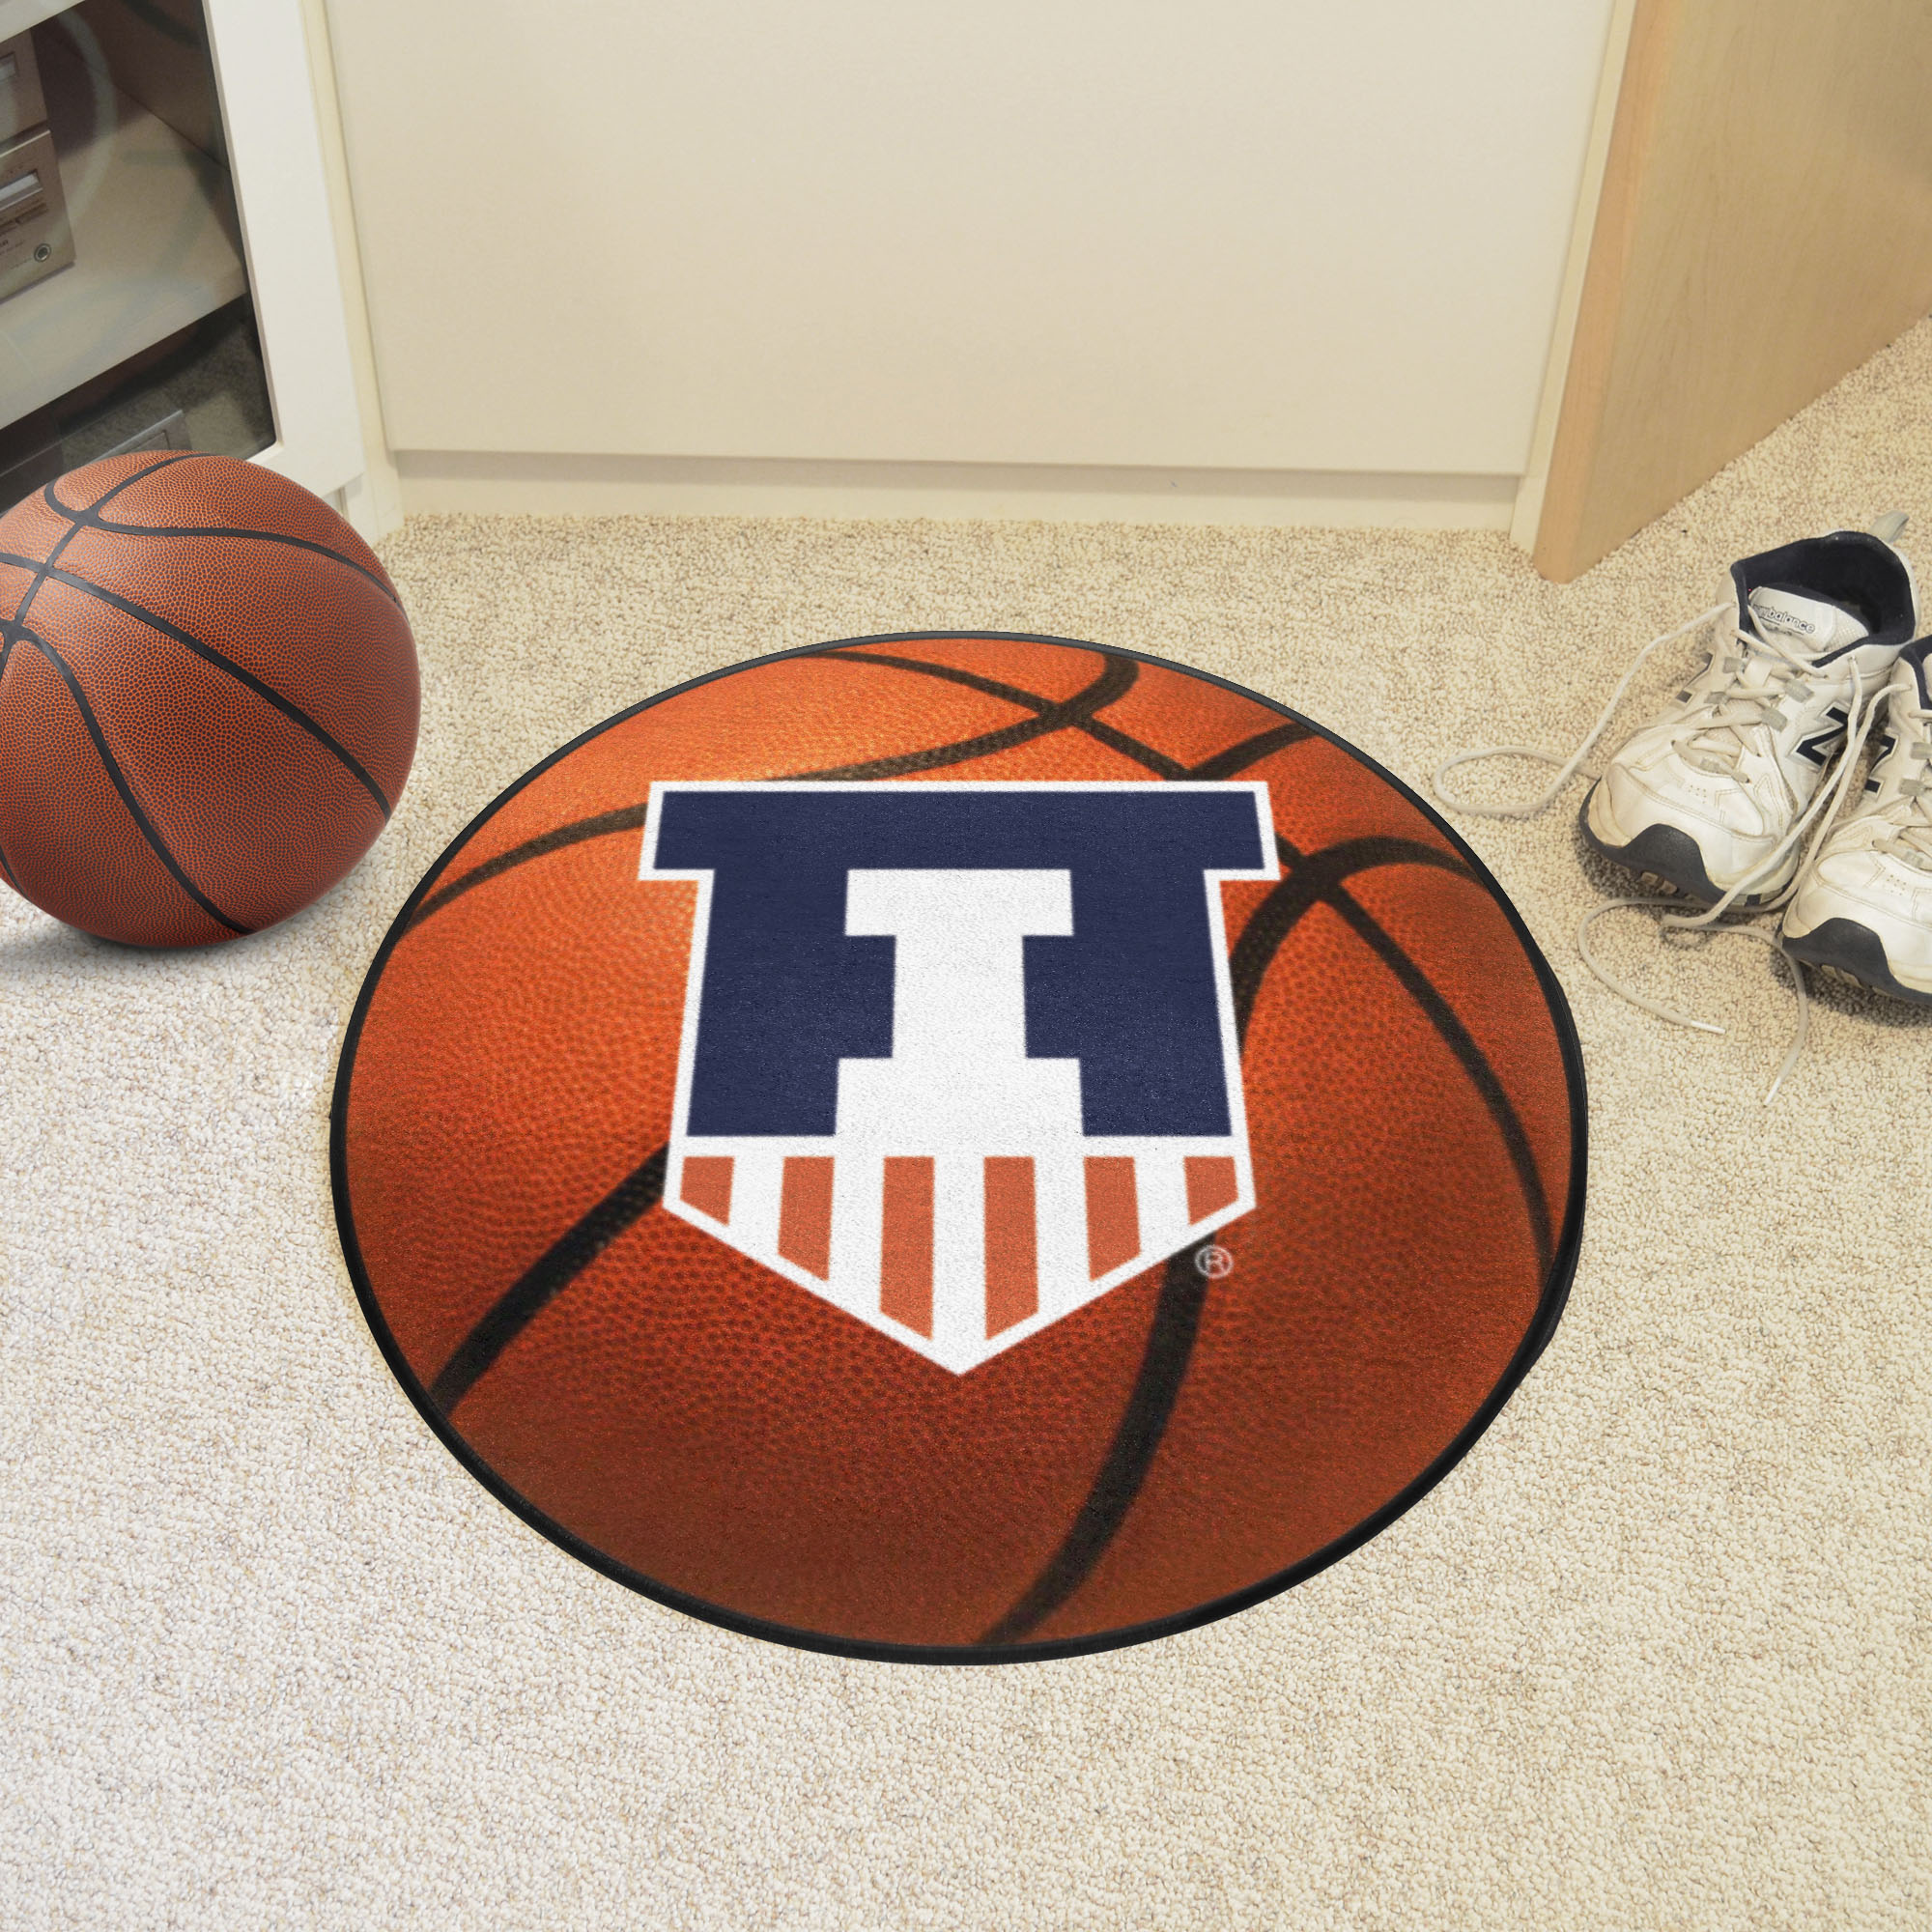 Illinois Illini Wordmark Basketball Shaped Area Rug